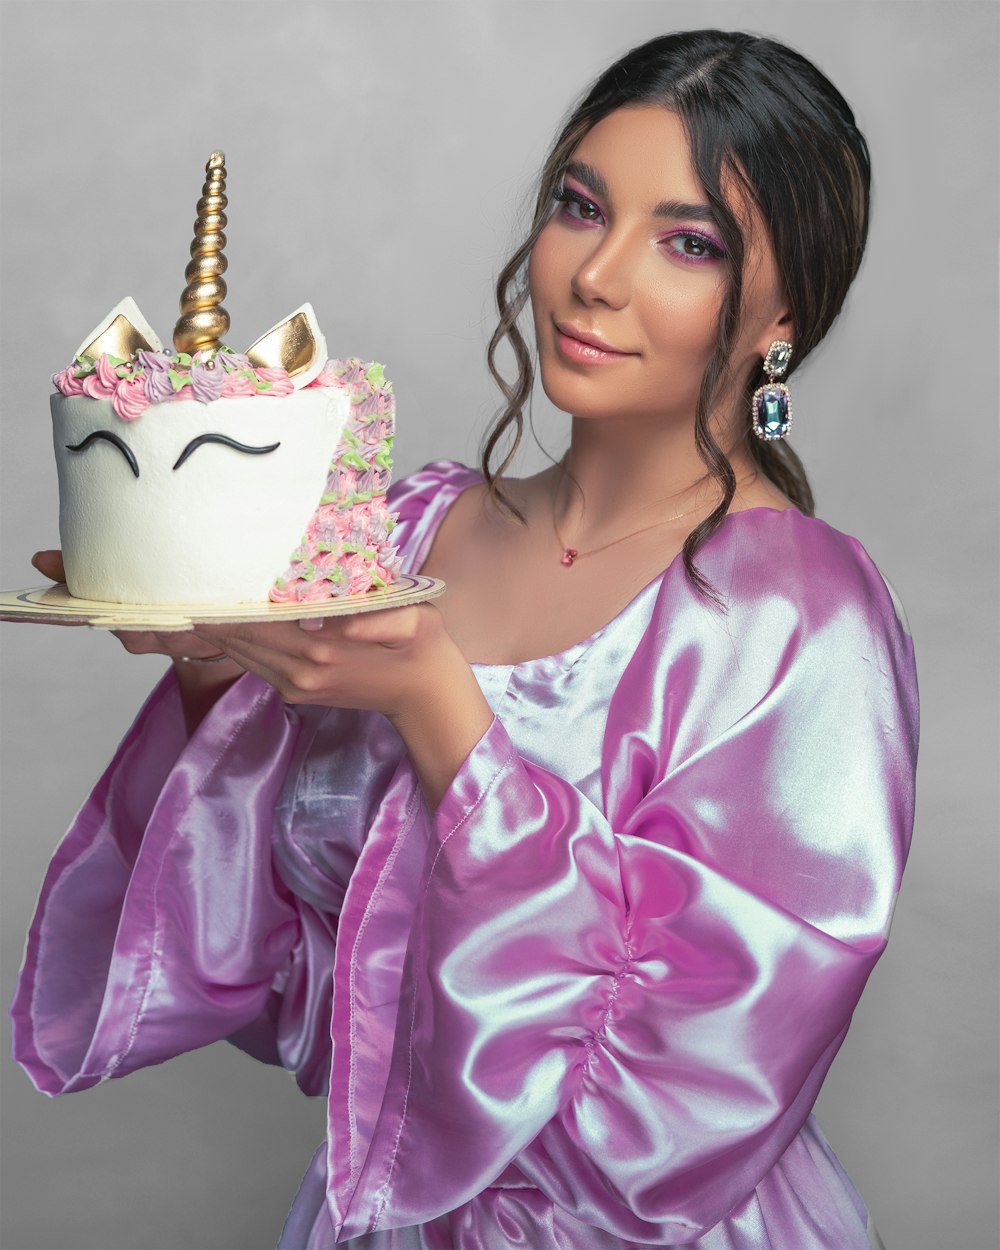 Femme en robe fleurie rose et blanche tenant un gâteau blanc et or